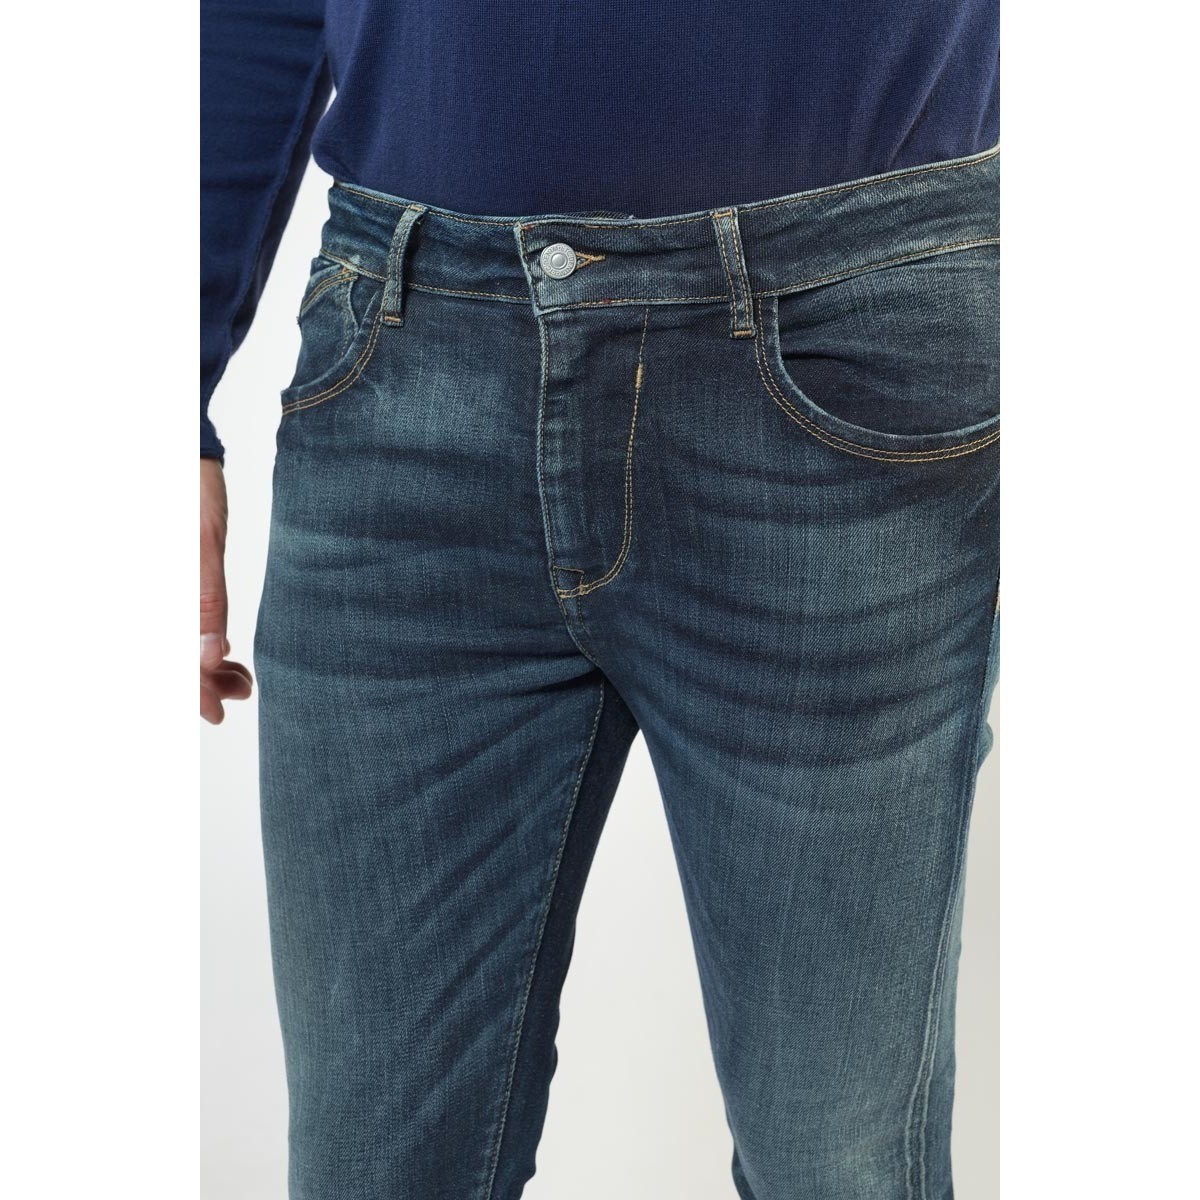 Le Temps des Cerises Bleu Power skinny 7/8ème jeans vintage bleu 2fwCzbG7